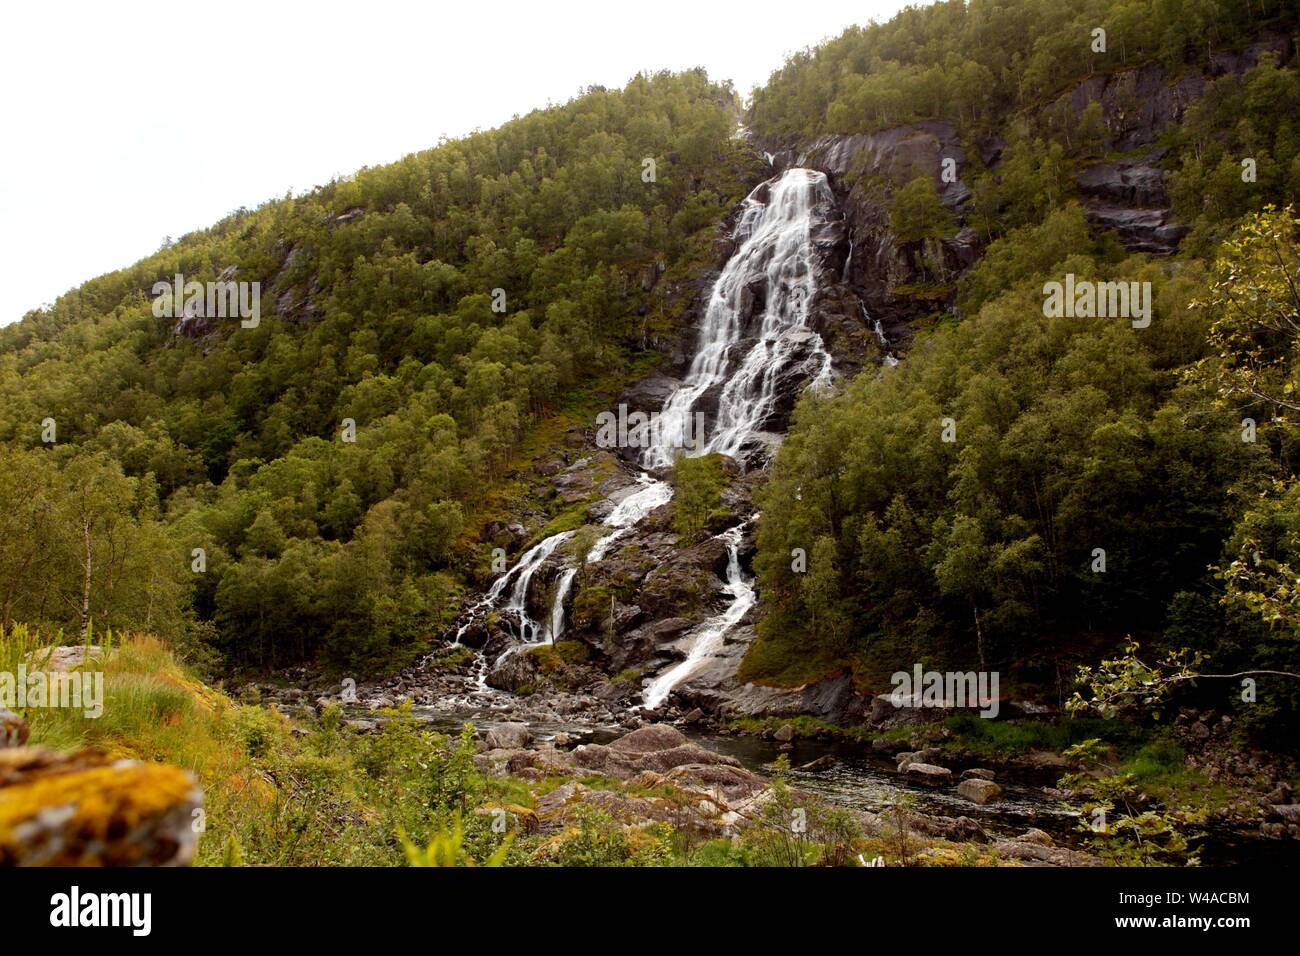 Ryfylke Wasserfall bei Svandalsfossen in Norwegen, mächtigen Wasserfall in den norwegischen Bergen. Nationale touristische Ryfylke Route. Stockfoto